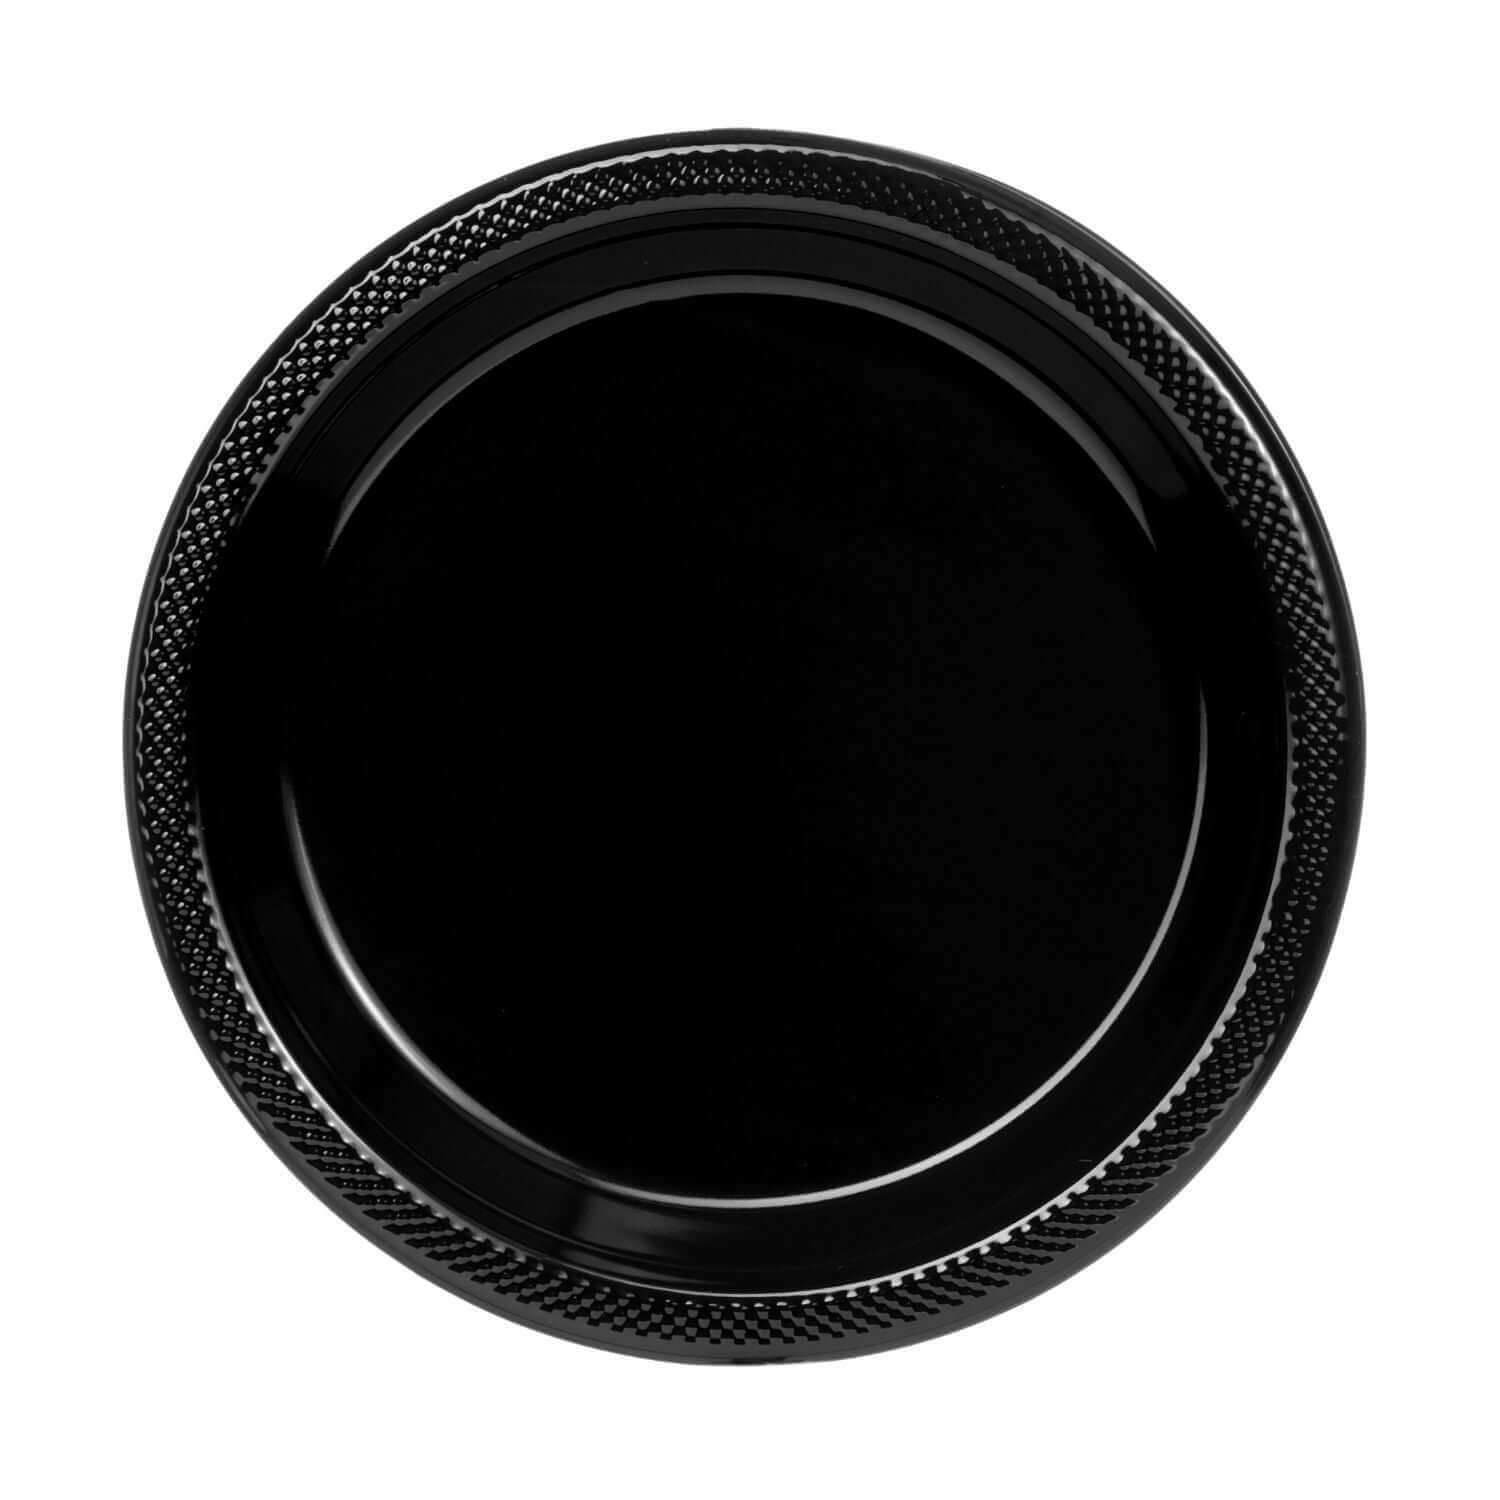 10" | Black Plastic Plates | 600 Count - Yom Tov Settings